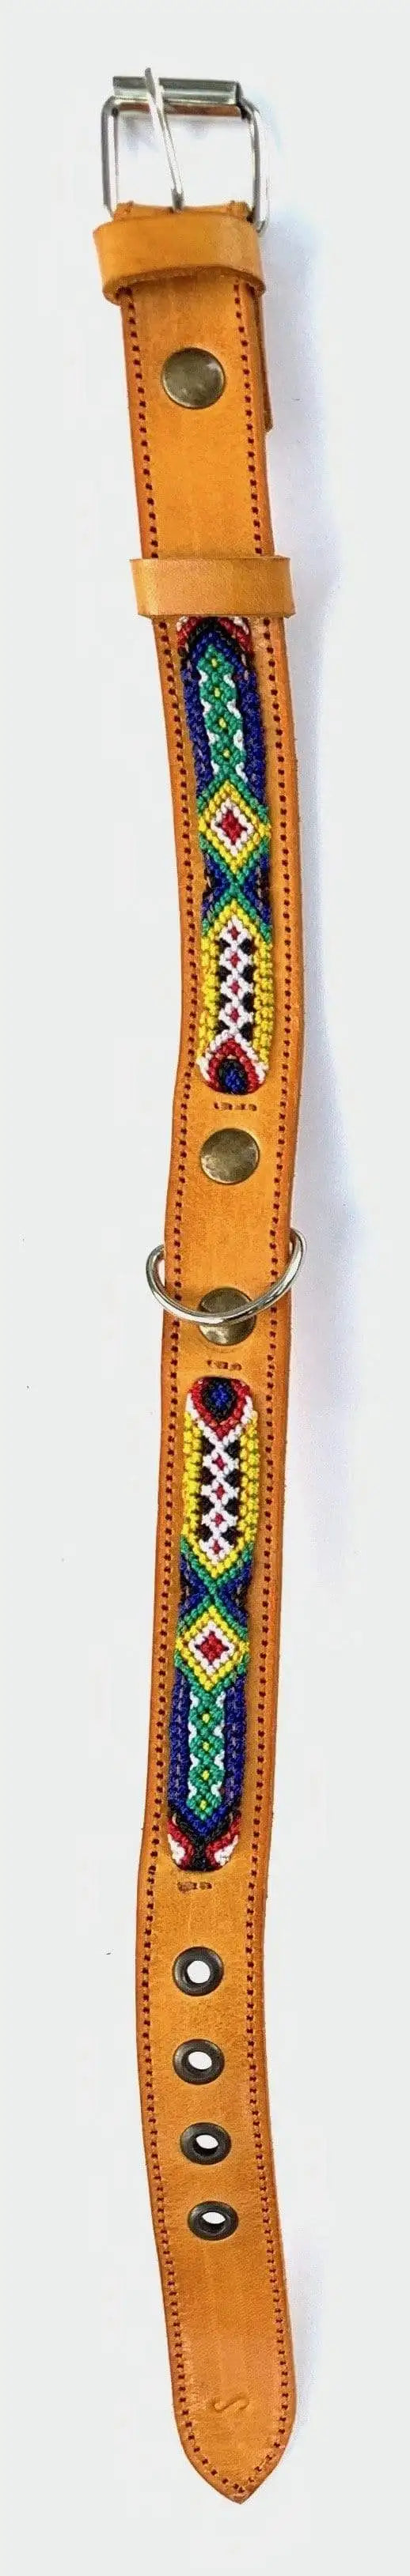 Double Detail Artisanal Handmade Dog Collars - 9